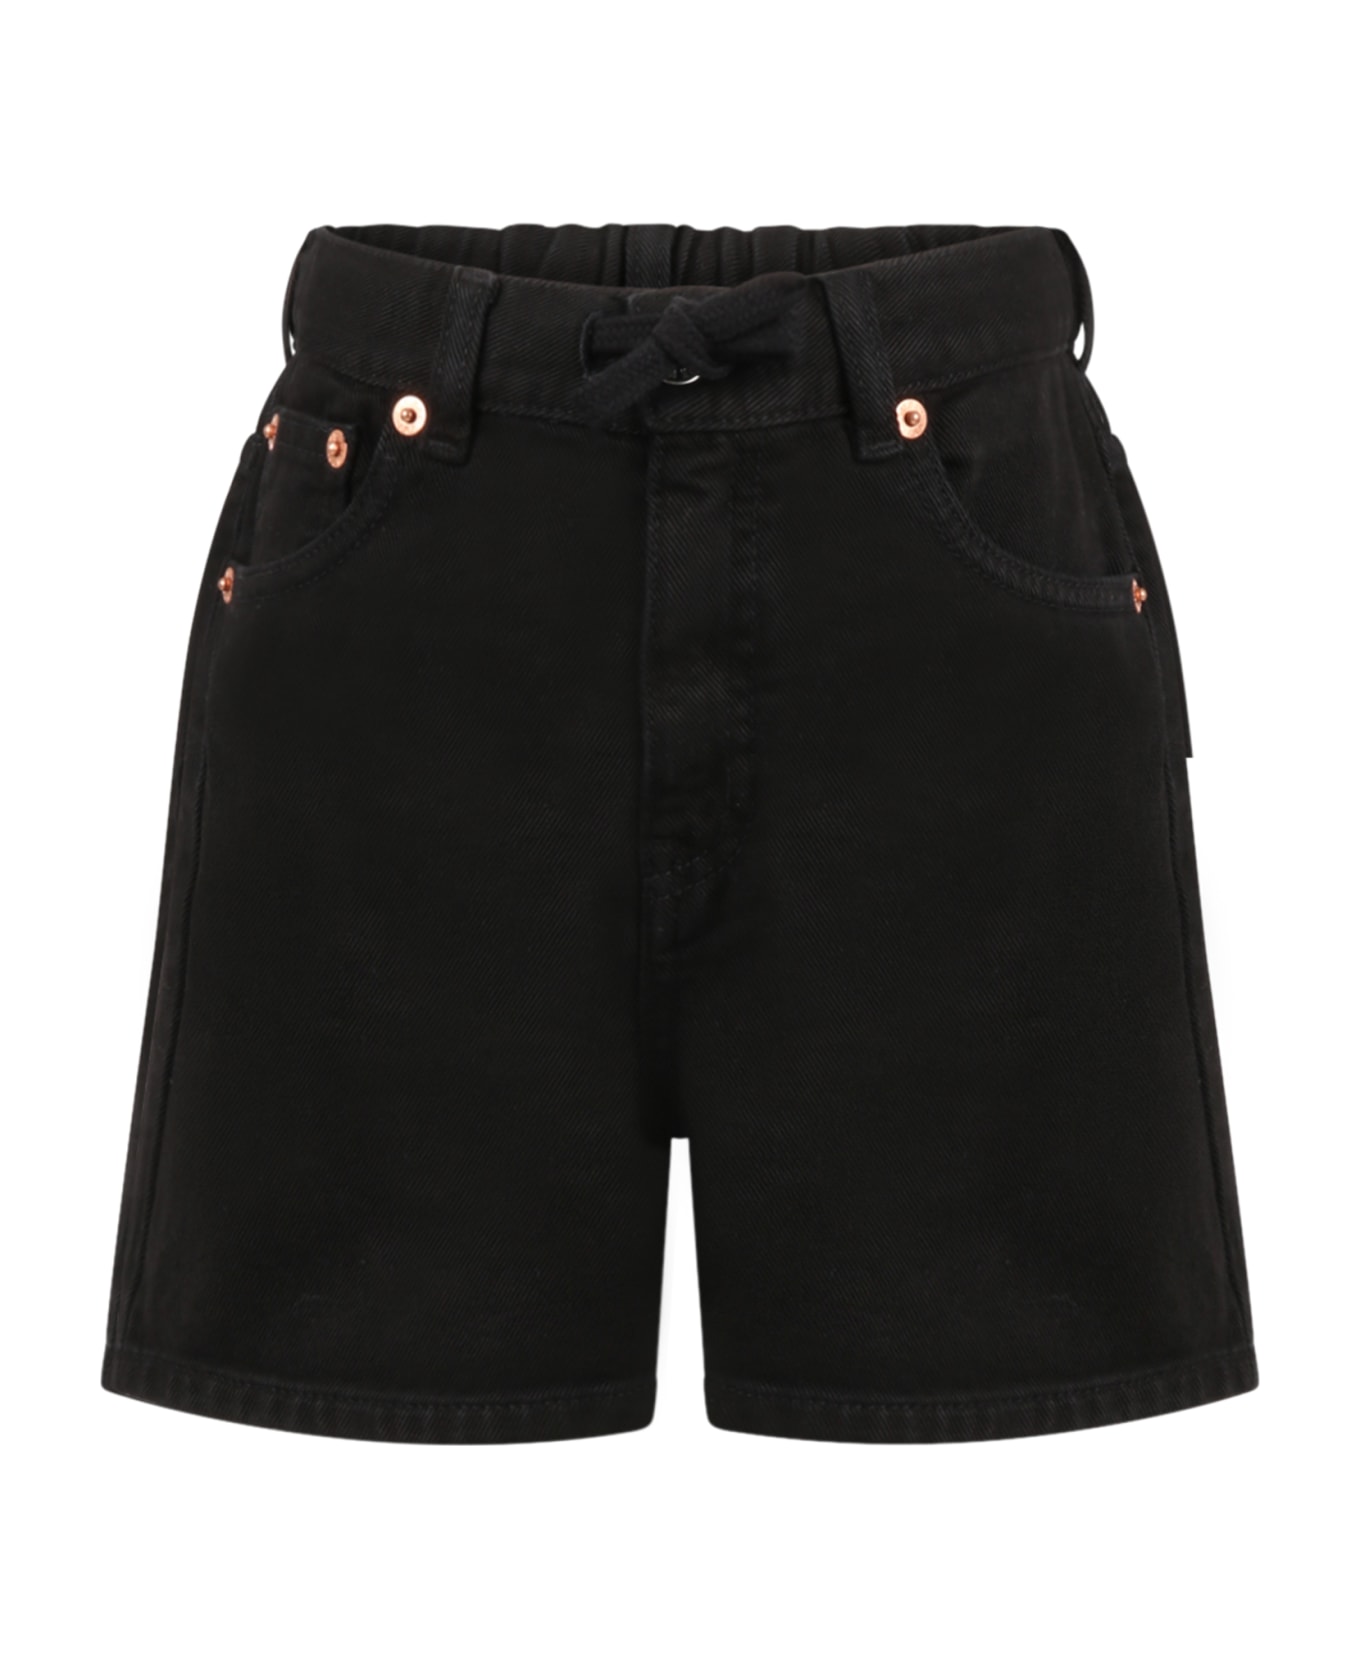 MM6 Maison Margiela Black Shorts For Girl - Black